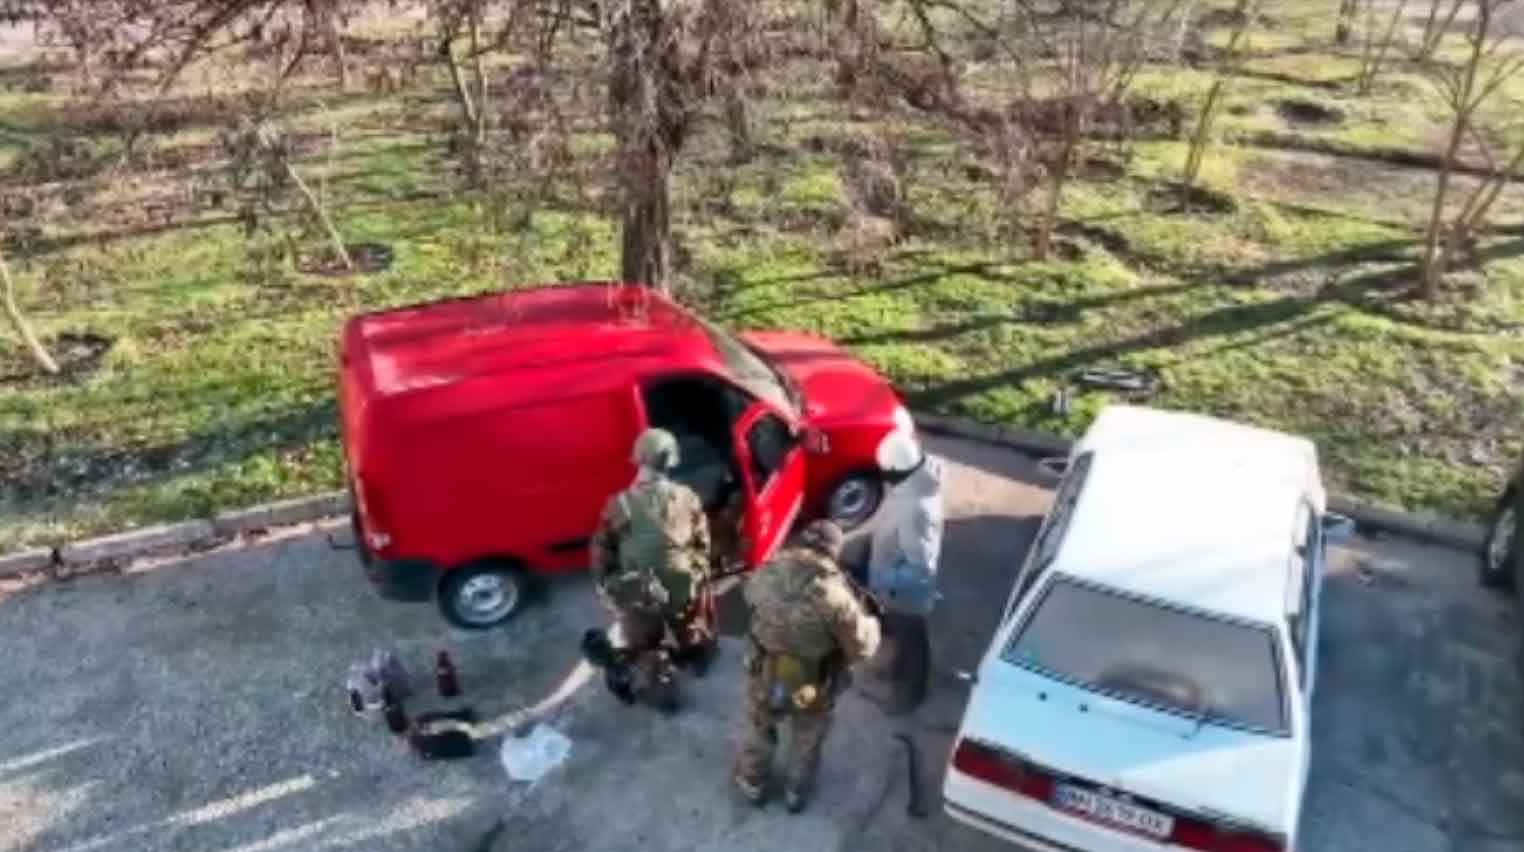 Serviços de segurança explodem carro cheio de explosivos. Foto: Reprodução